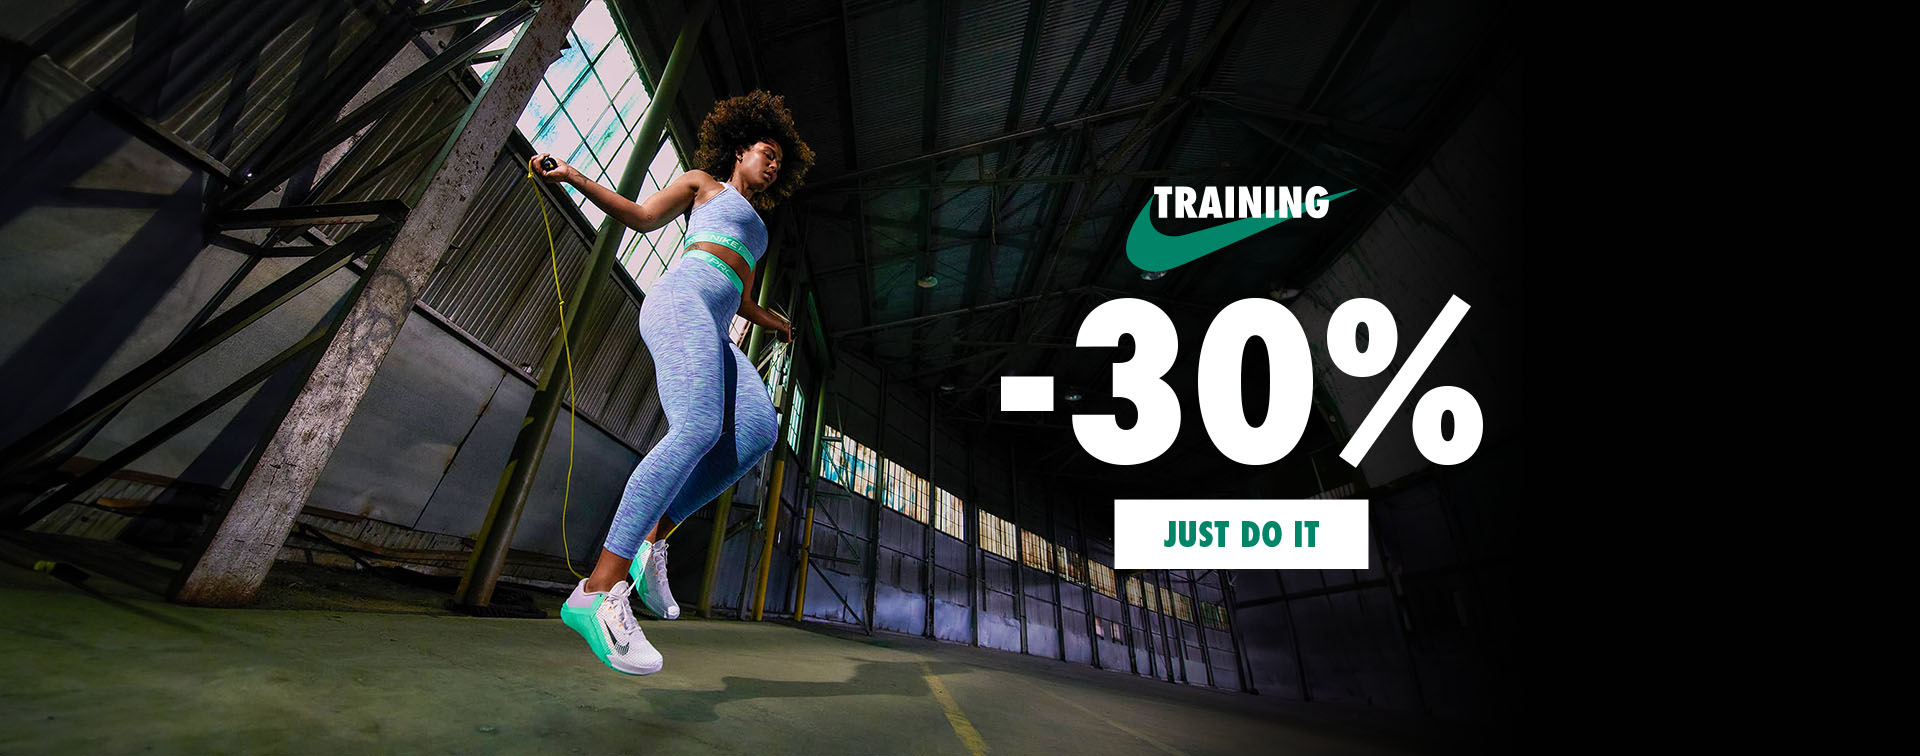 Training Nike